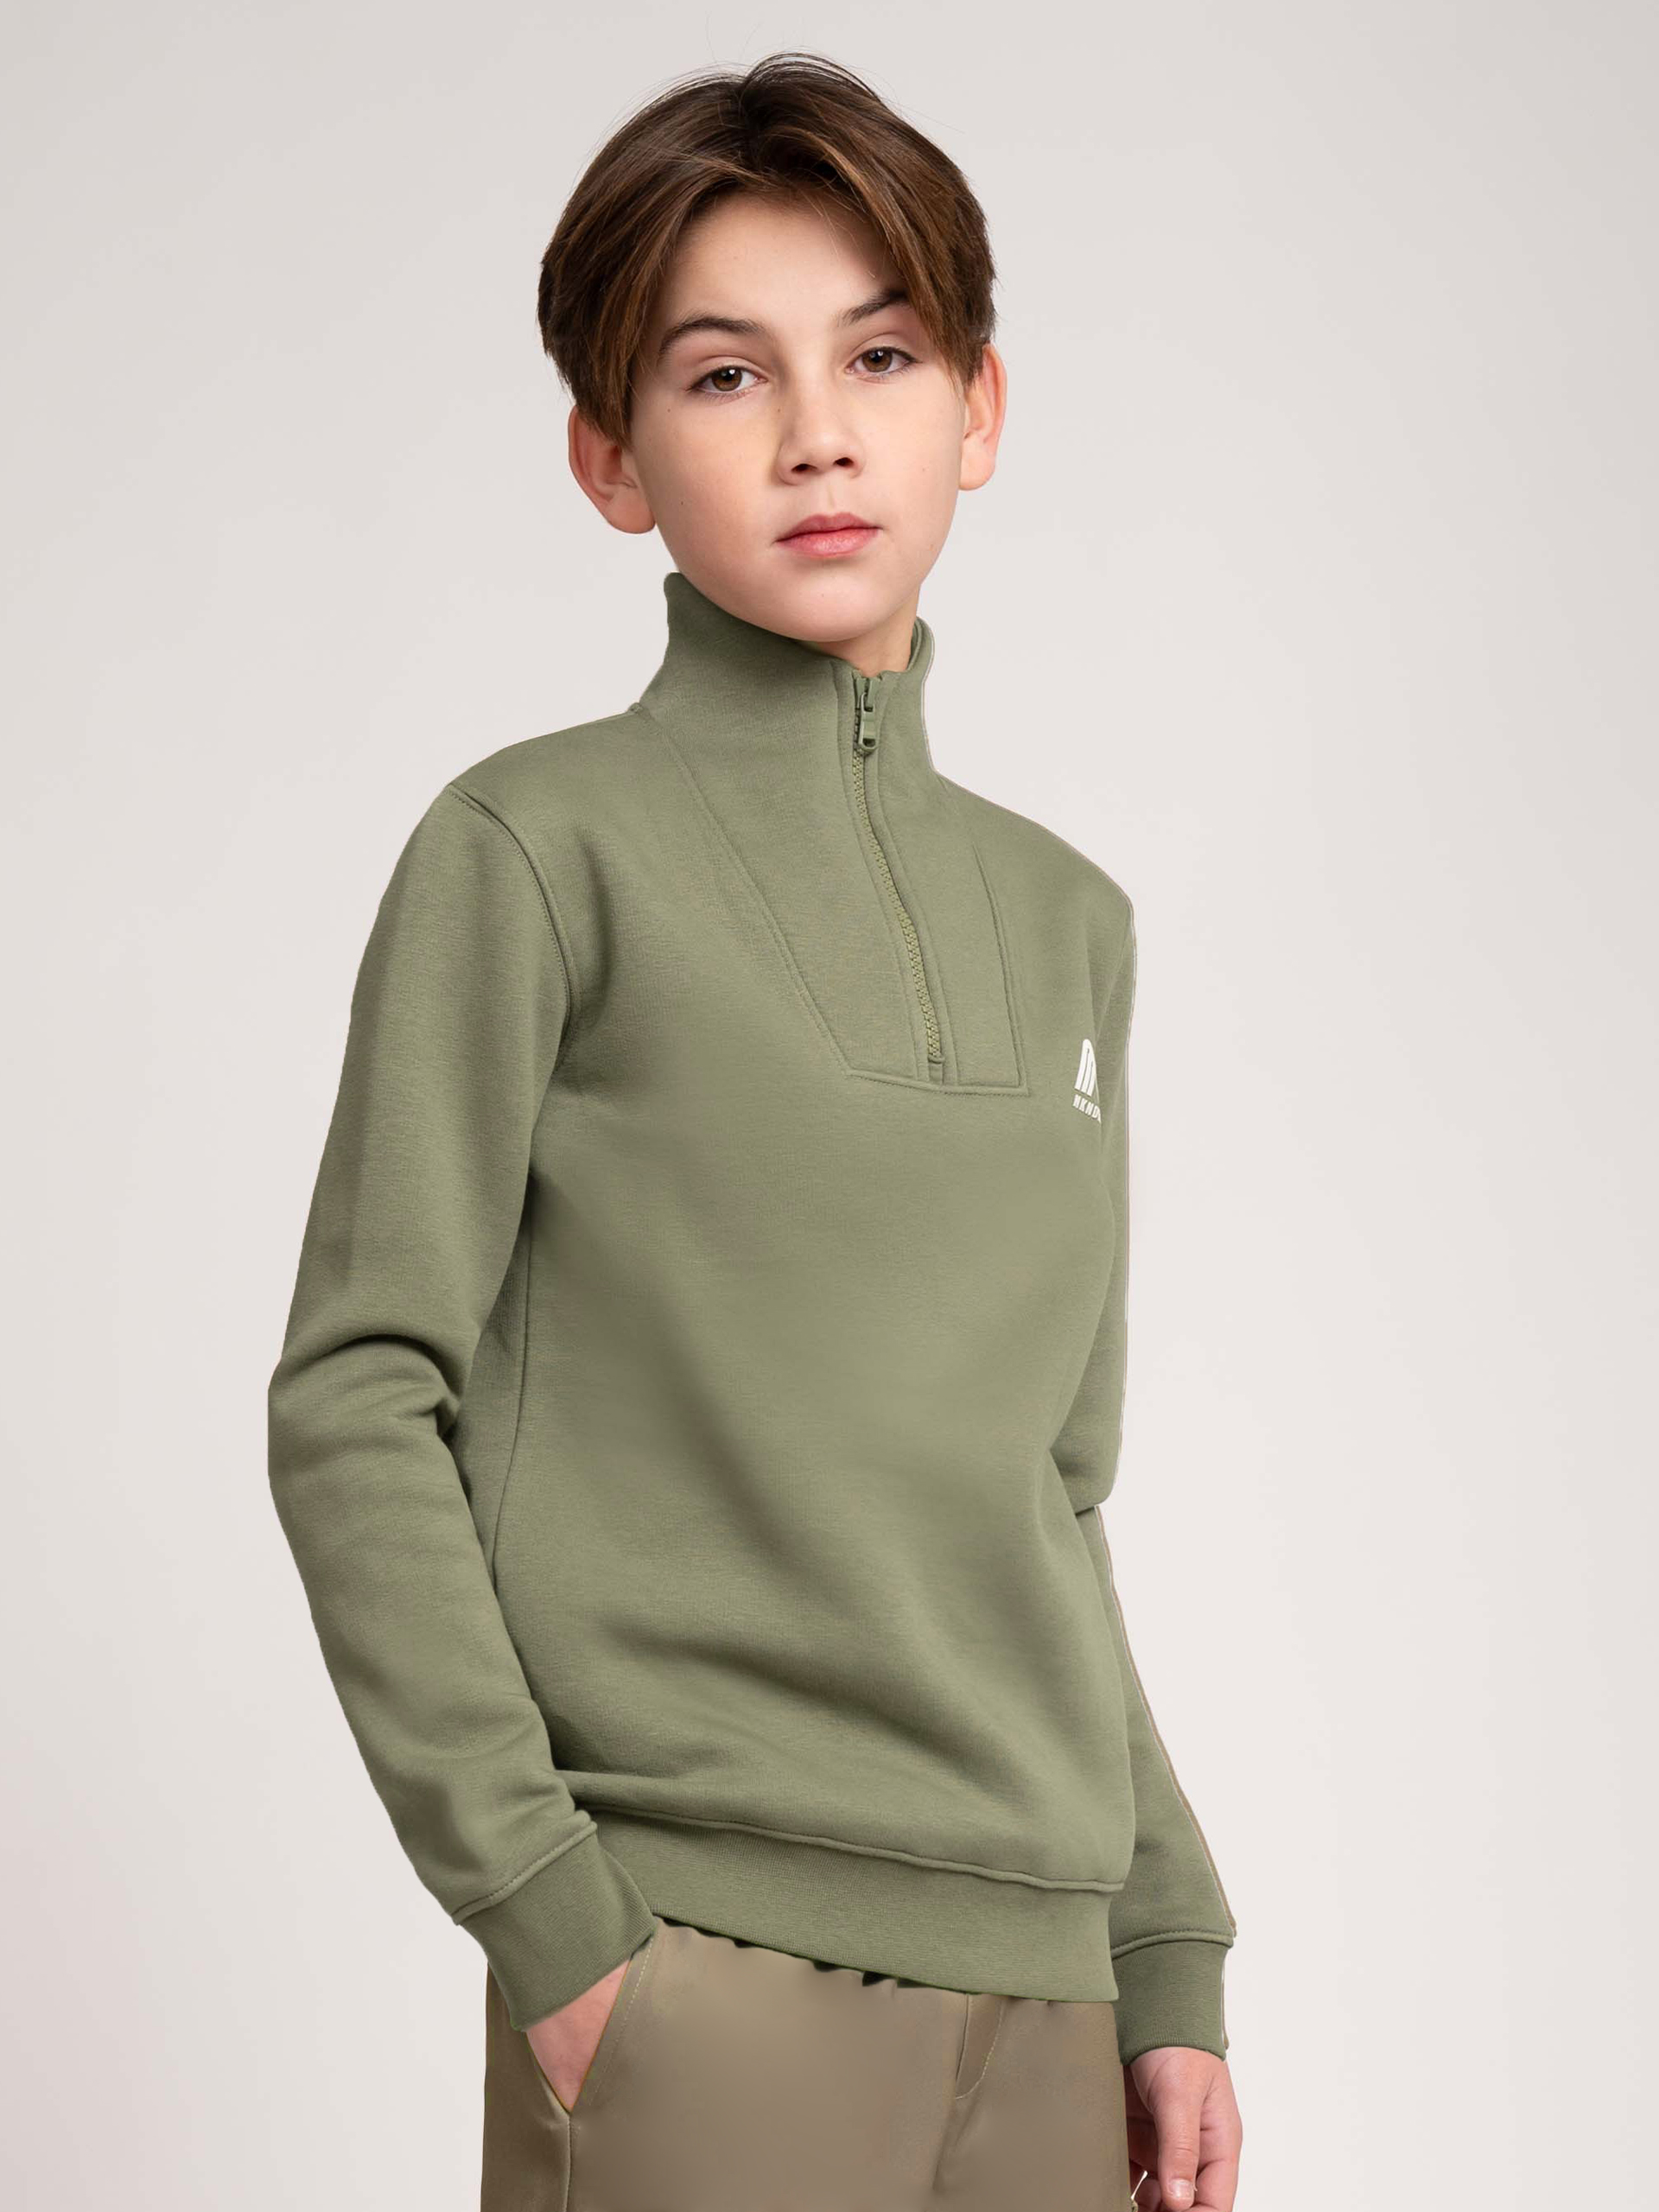 Sweatshirt with zipper 